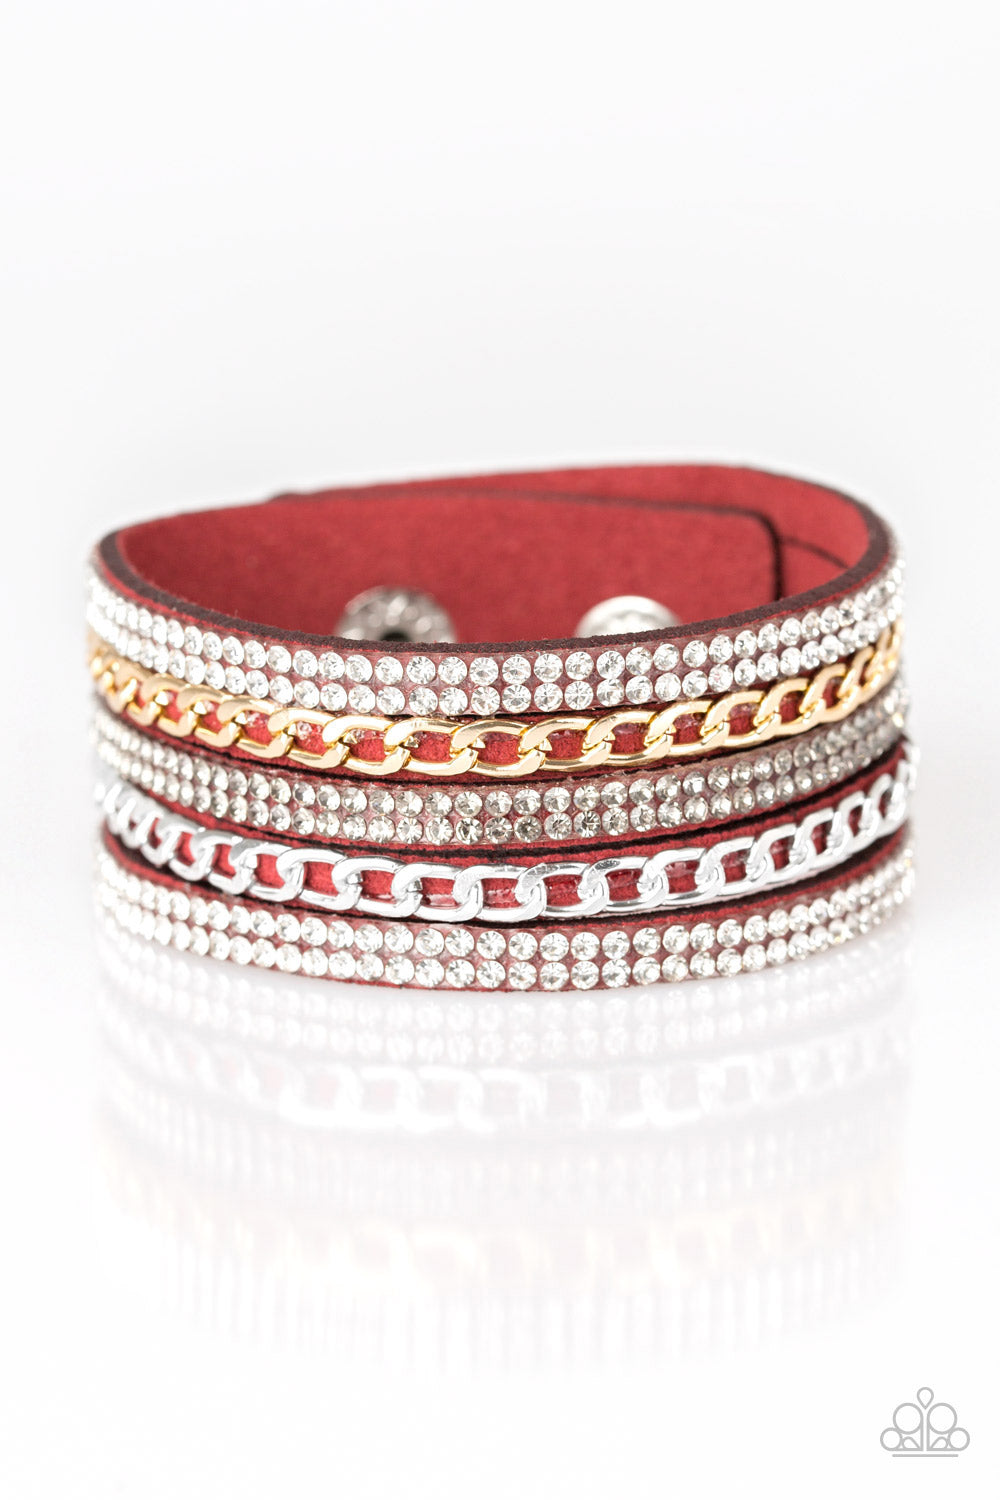 Paparazzi Fashion Fiend Red Single Wrap Snap Bracelet - P9DI-URRD-035XX